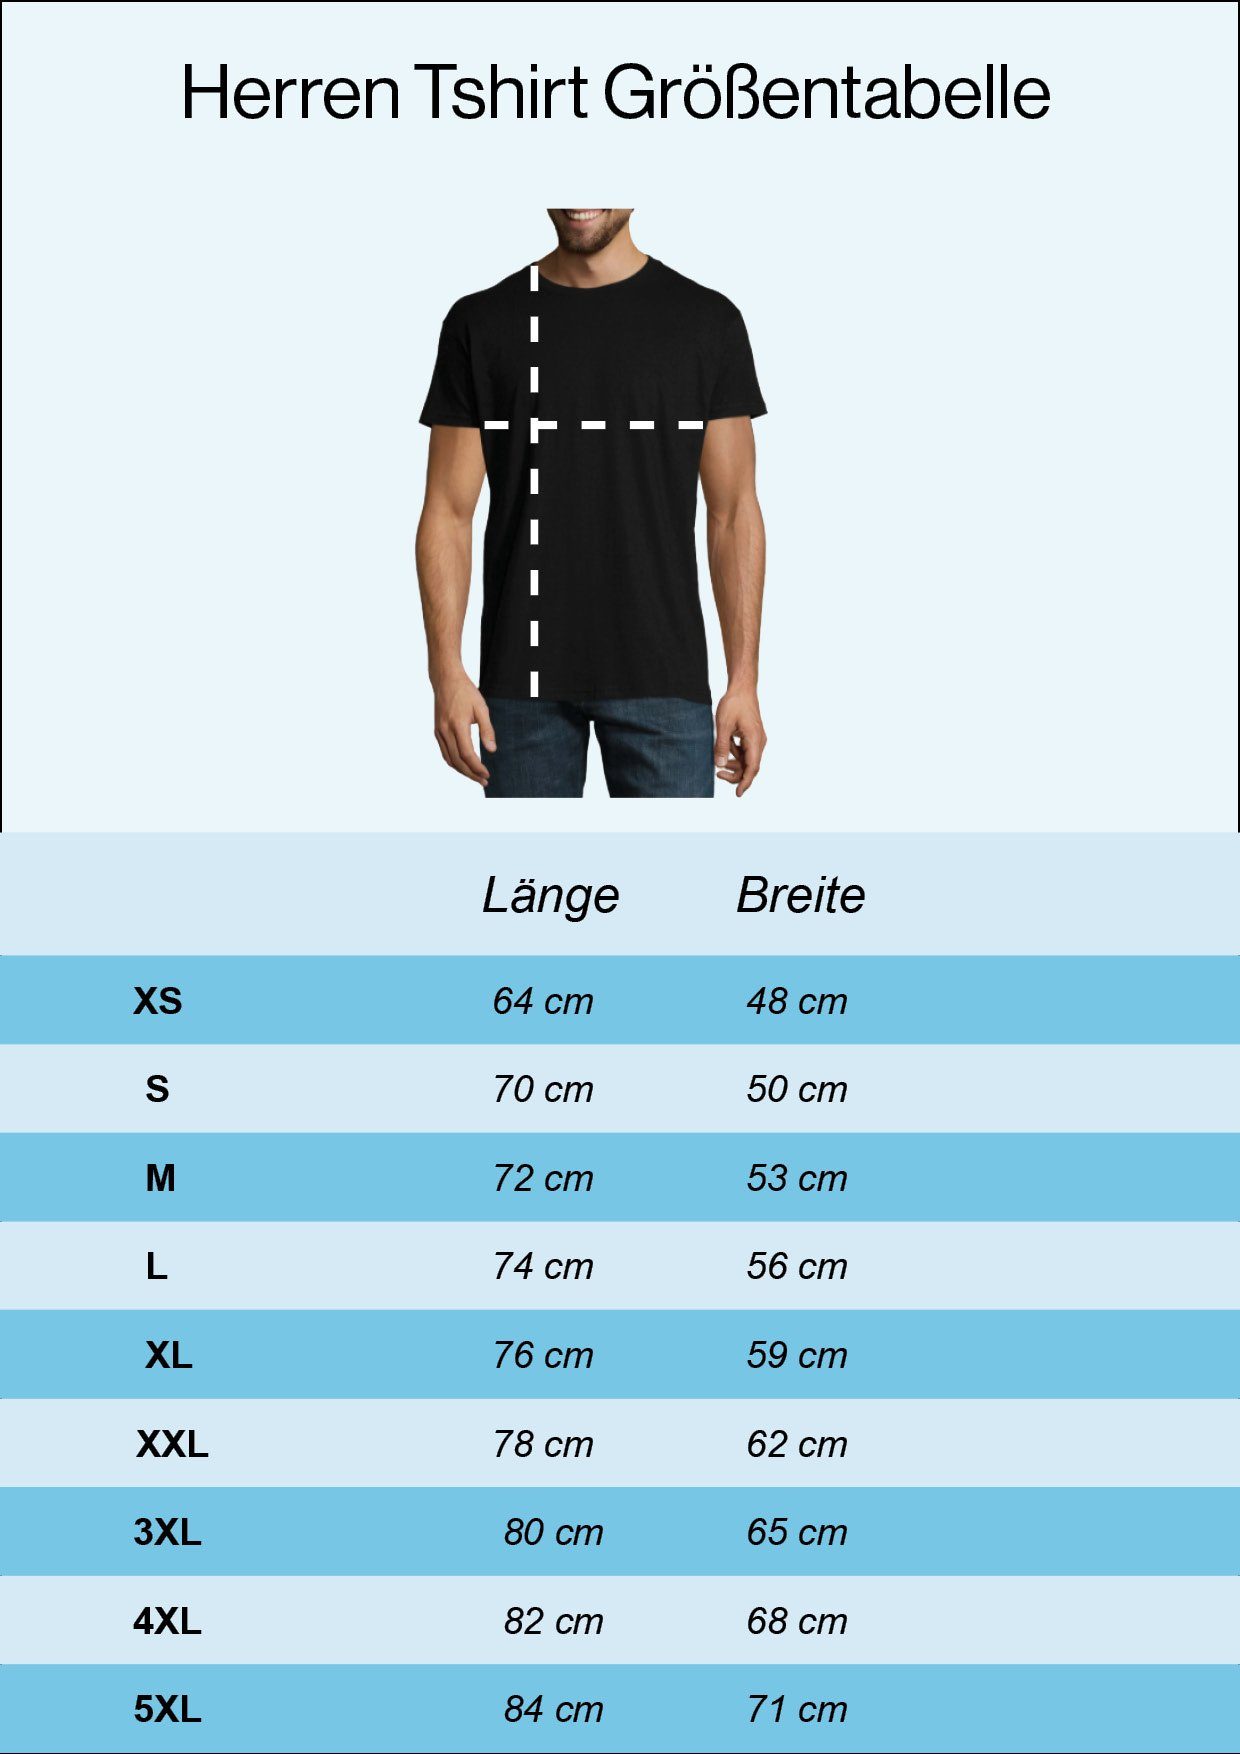 Ein Herren Schwarz trendigem Shirt Designz mit Schachzug Frontprint Youth Kluger T-Shirt